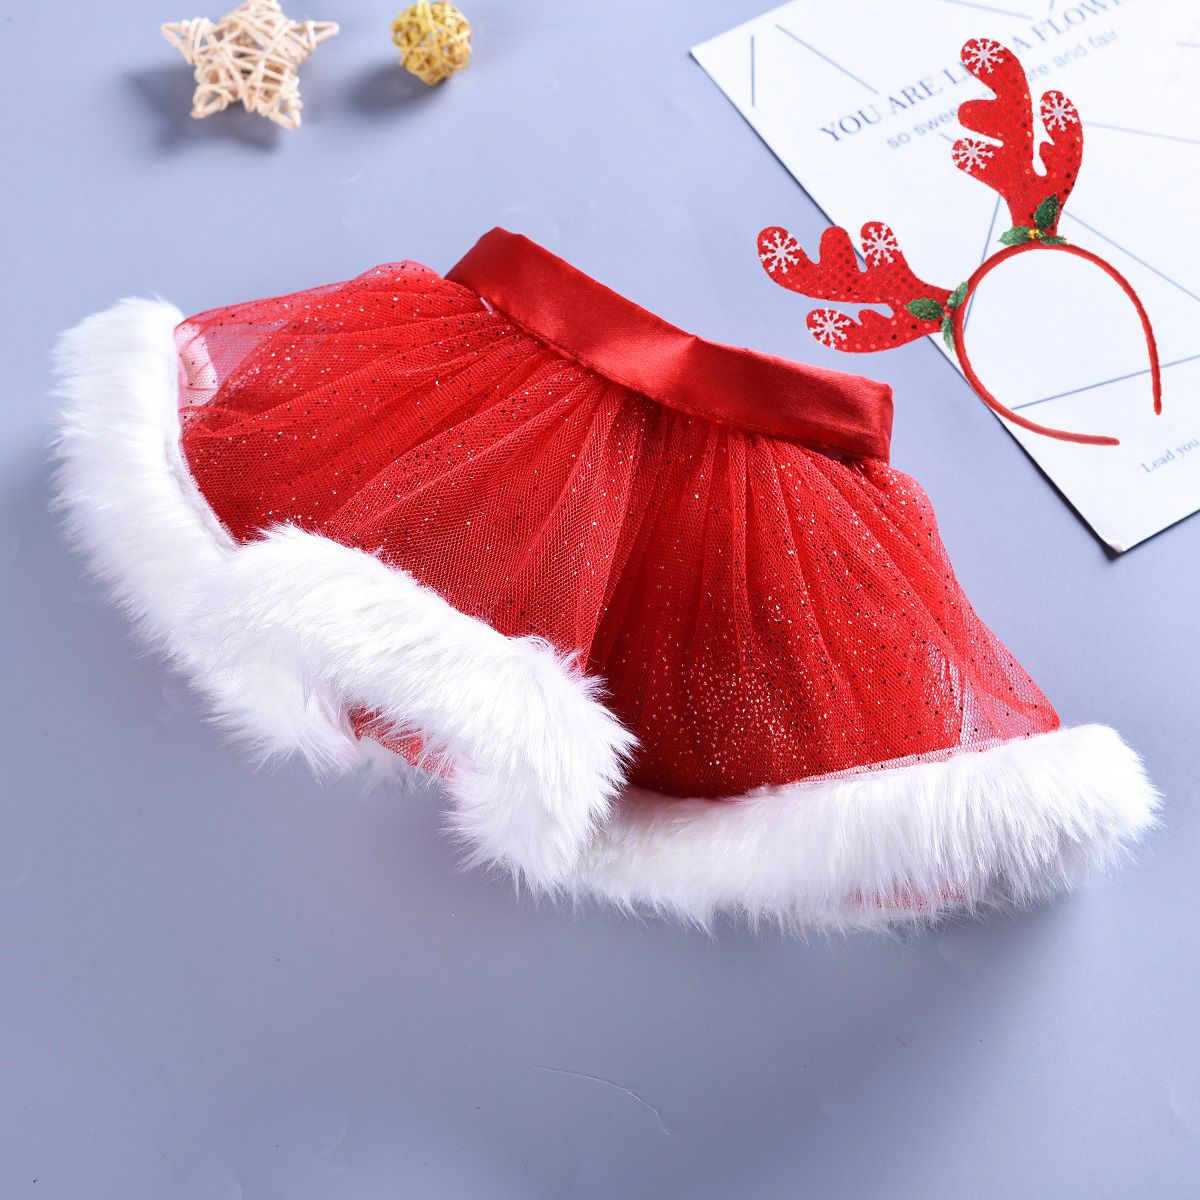 El diseño Glorioso barba Vestido de bola de la falda de Navidad roja del bebé tutú rojo traje de tul